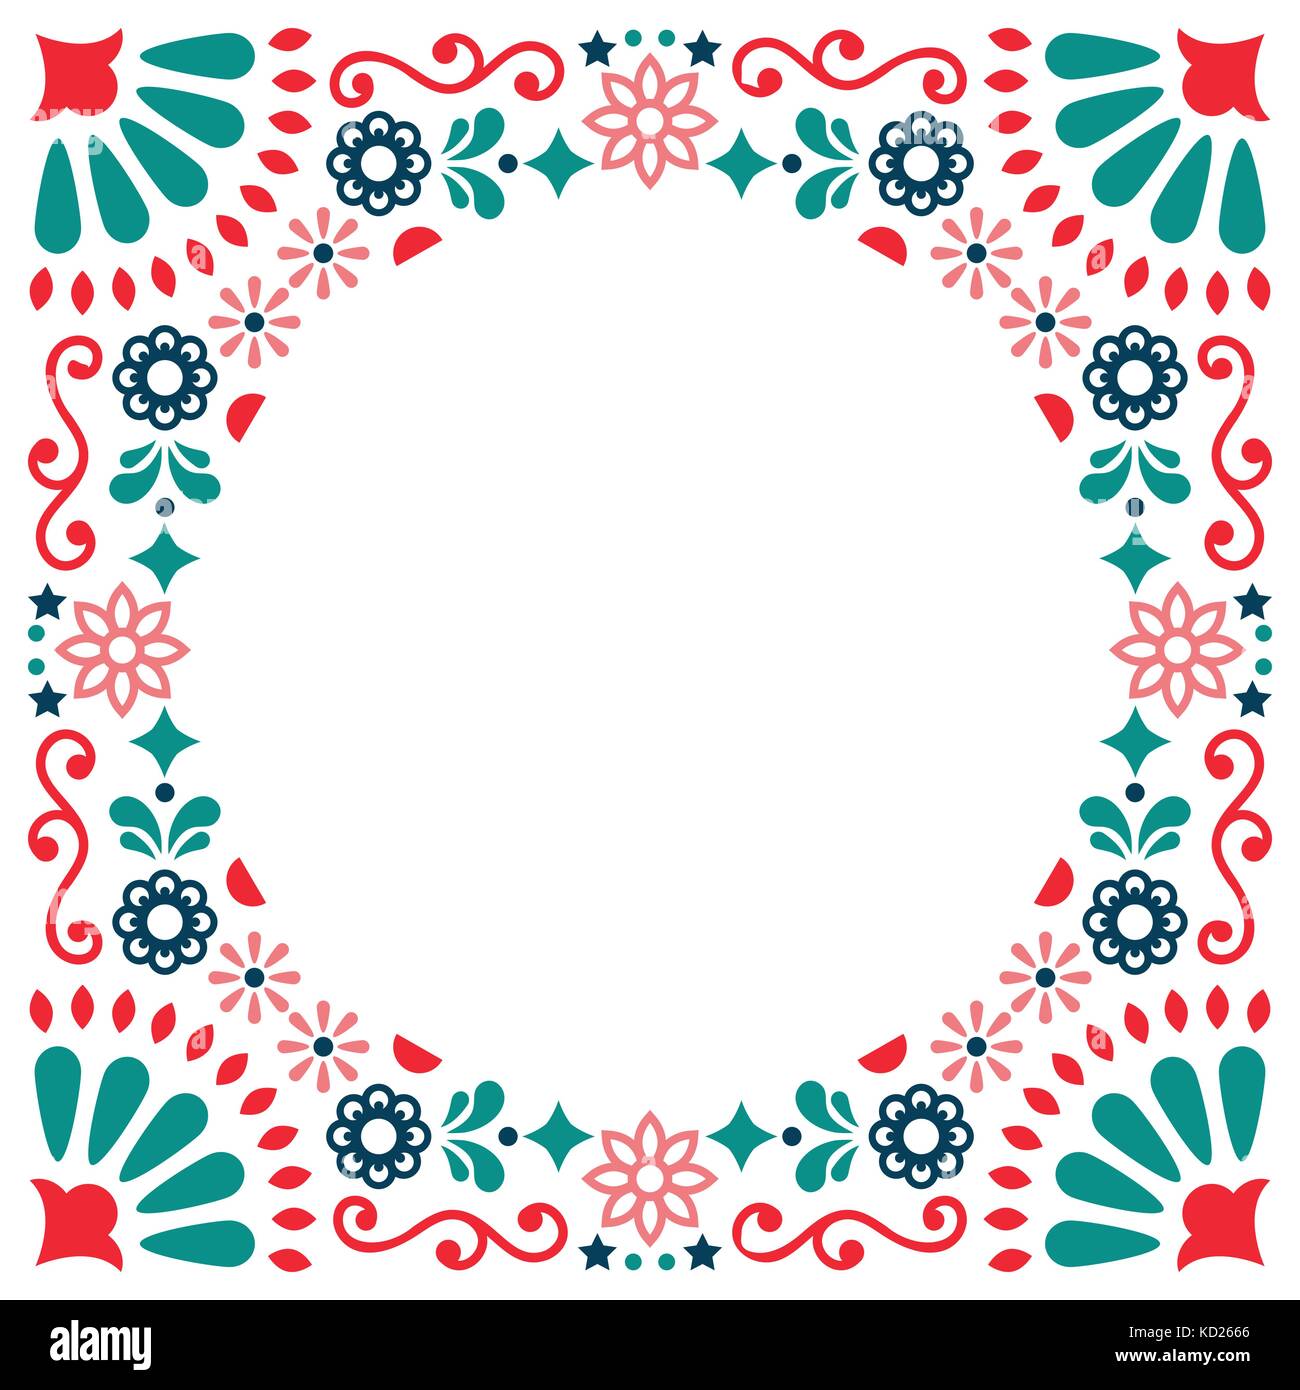 Carte de vœux vecteur populaire mexicain, un mariage ou une invitation à une fête, décoration florale et abstract border, frame Illustration de Vecteur